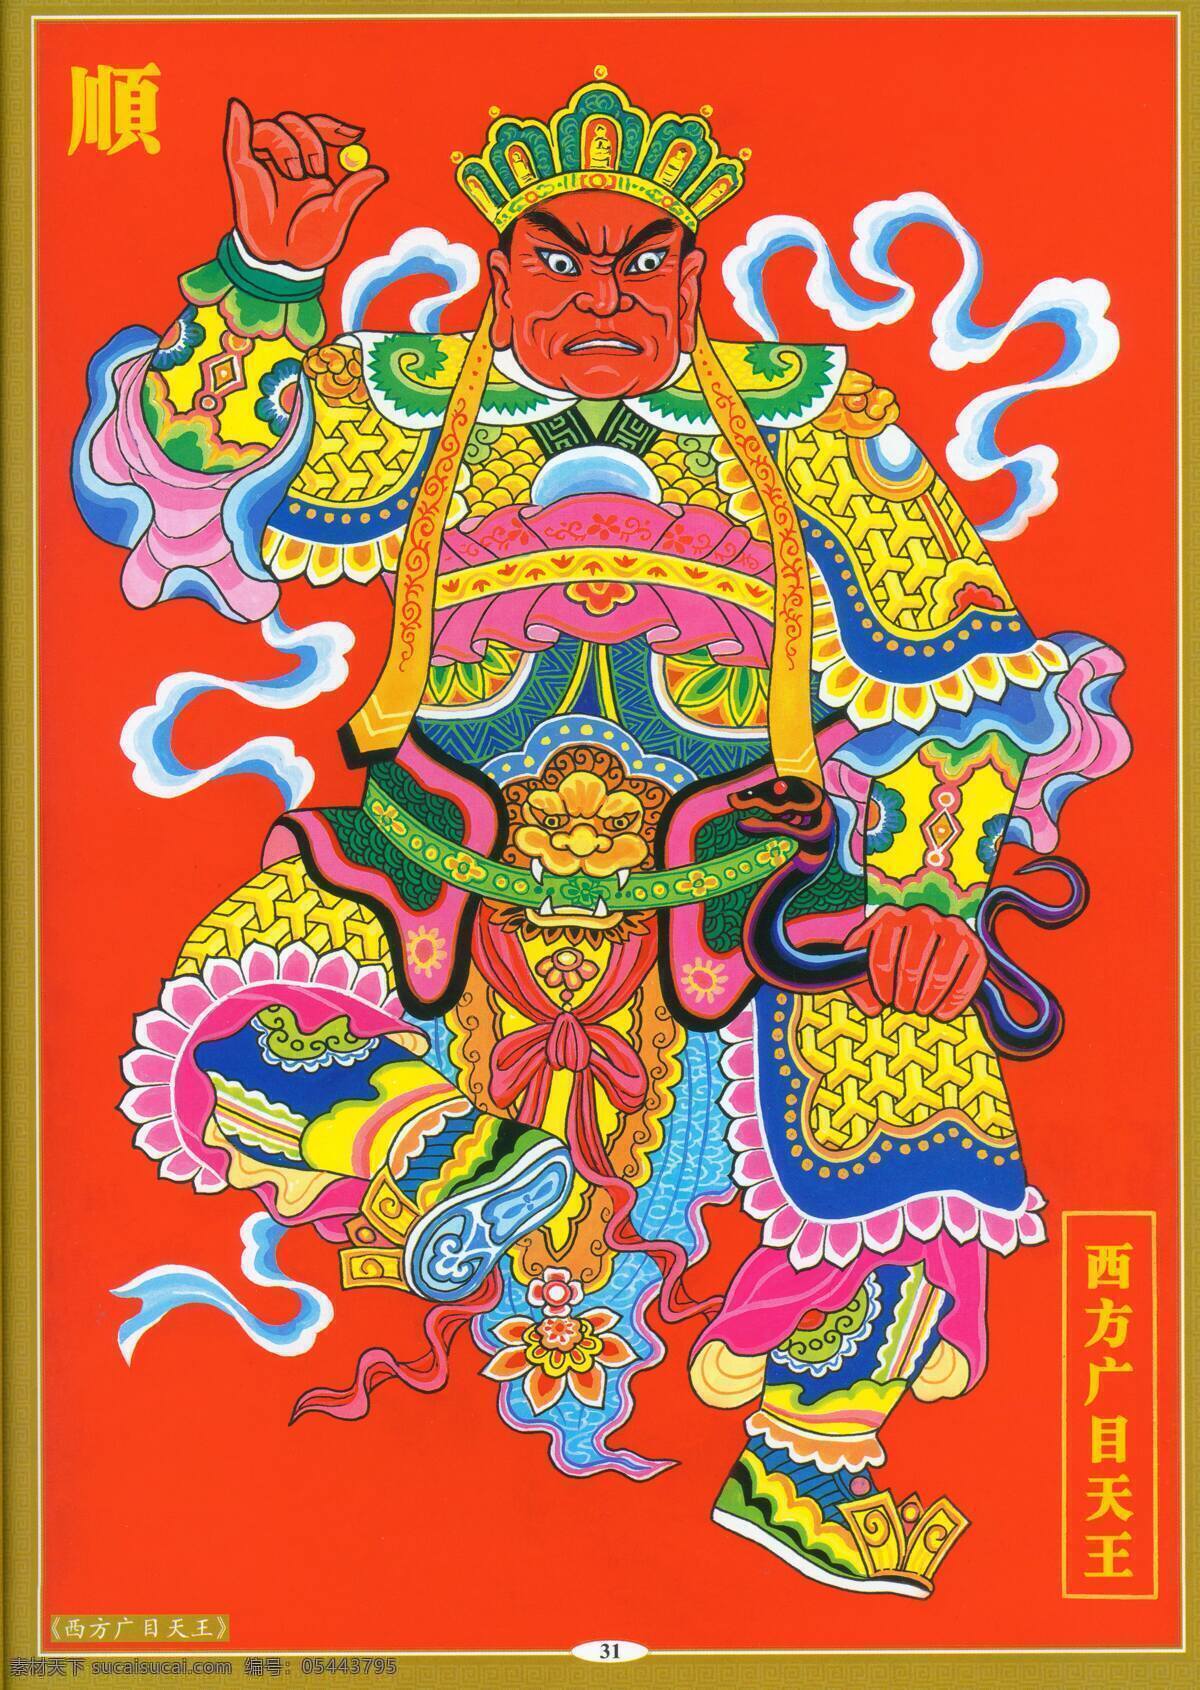 西方广目天王 设计素材 神祇图篇 民间美术 书画美术 红色